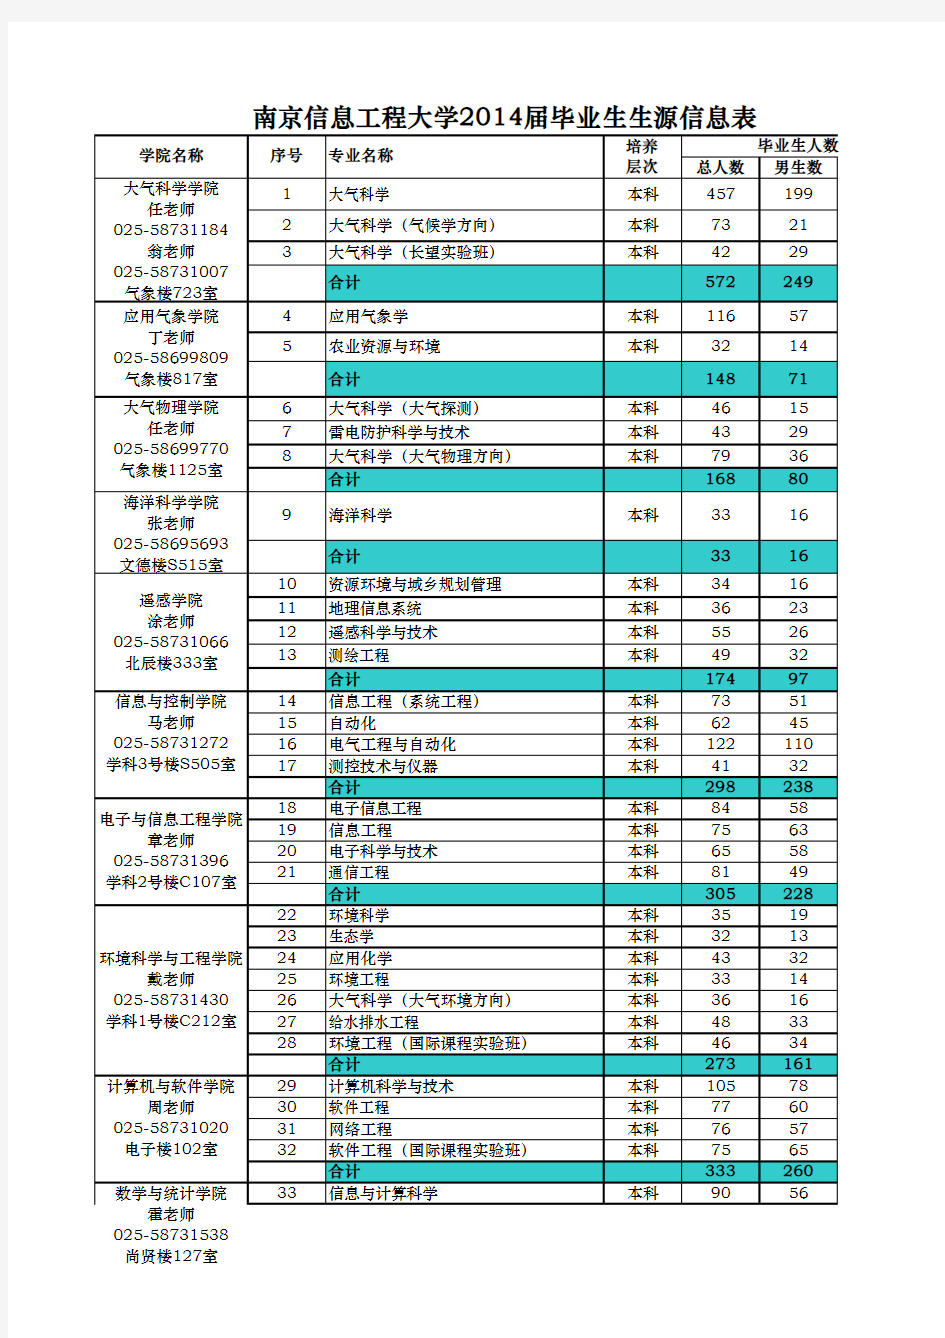 1、南京信息工程大学2014届毕业生生源信息表